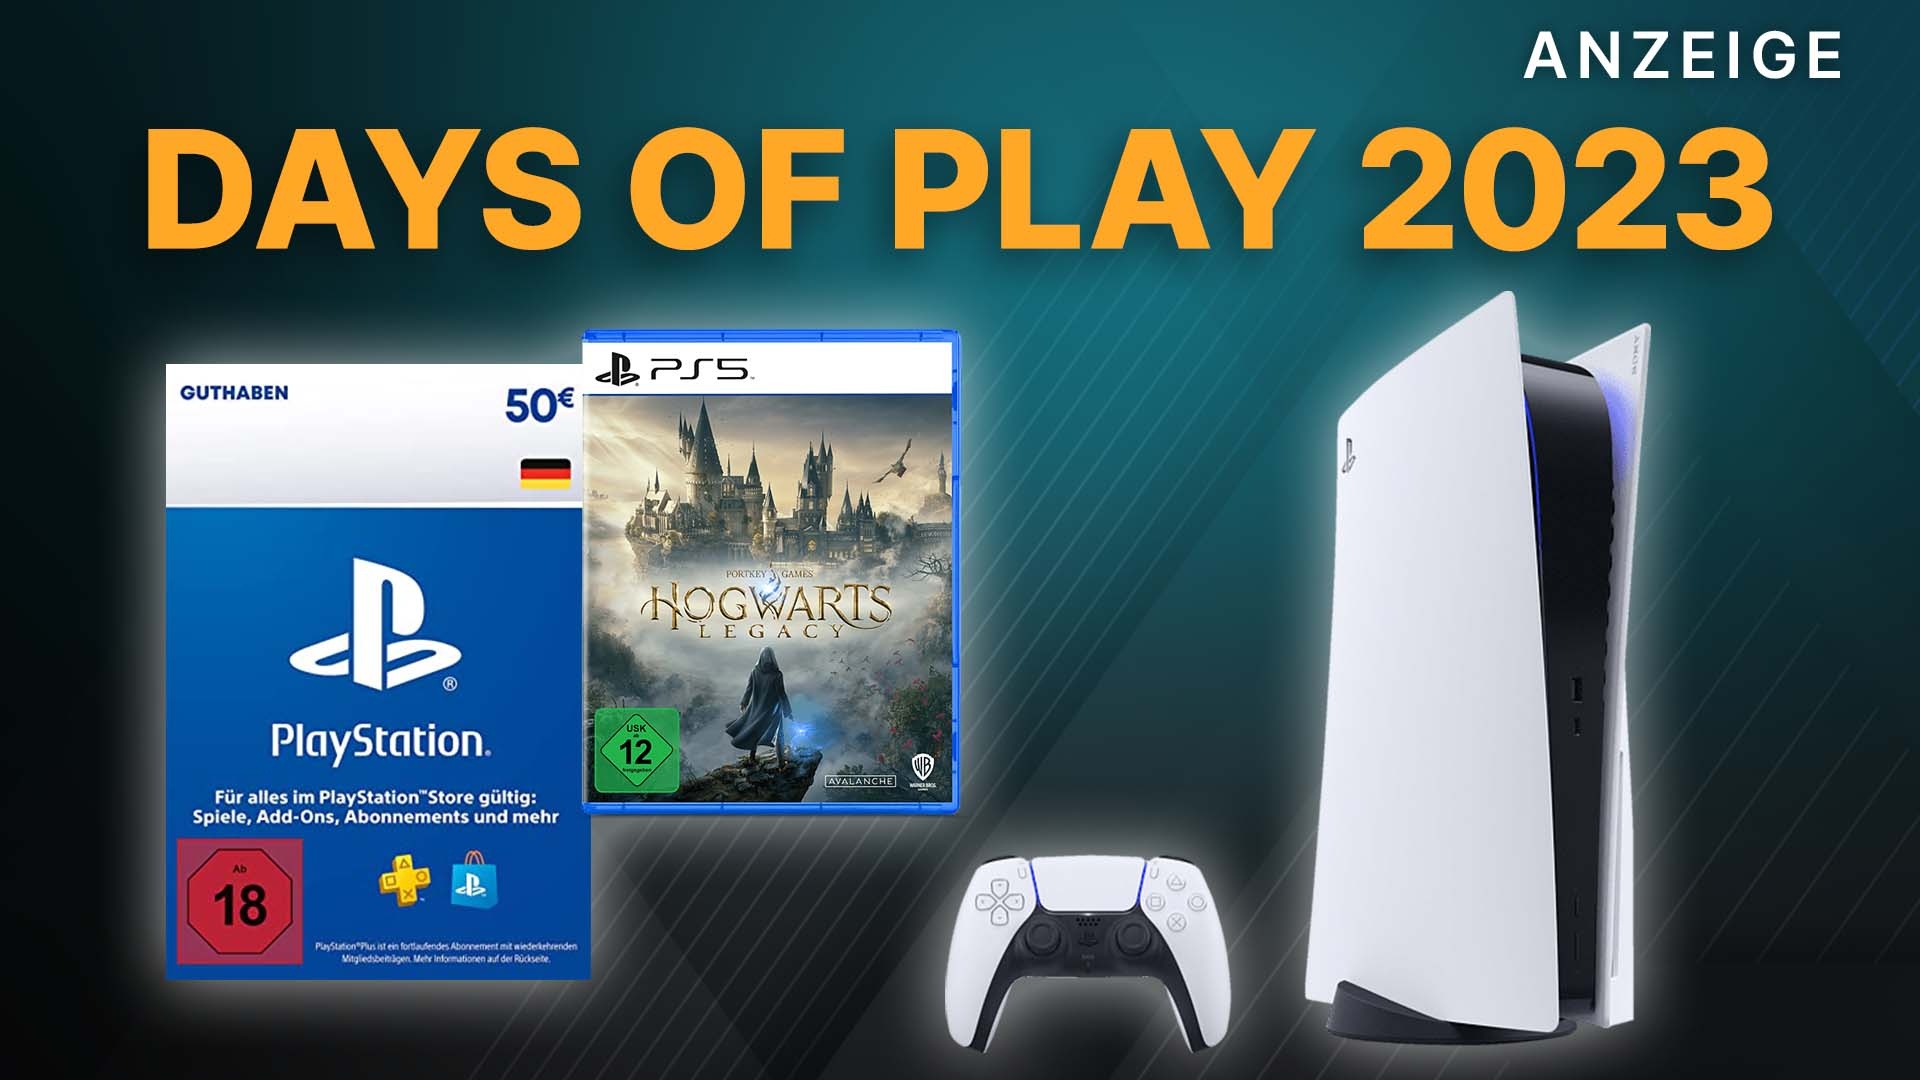 Days of Play 2023: Diese Angebote für PS5, PS4, Playstation Plus mitsamt  Games und Guthaben könnt ihr erwarten